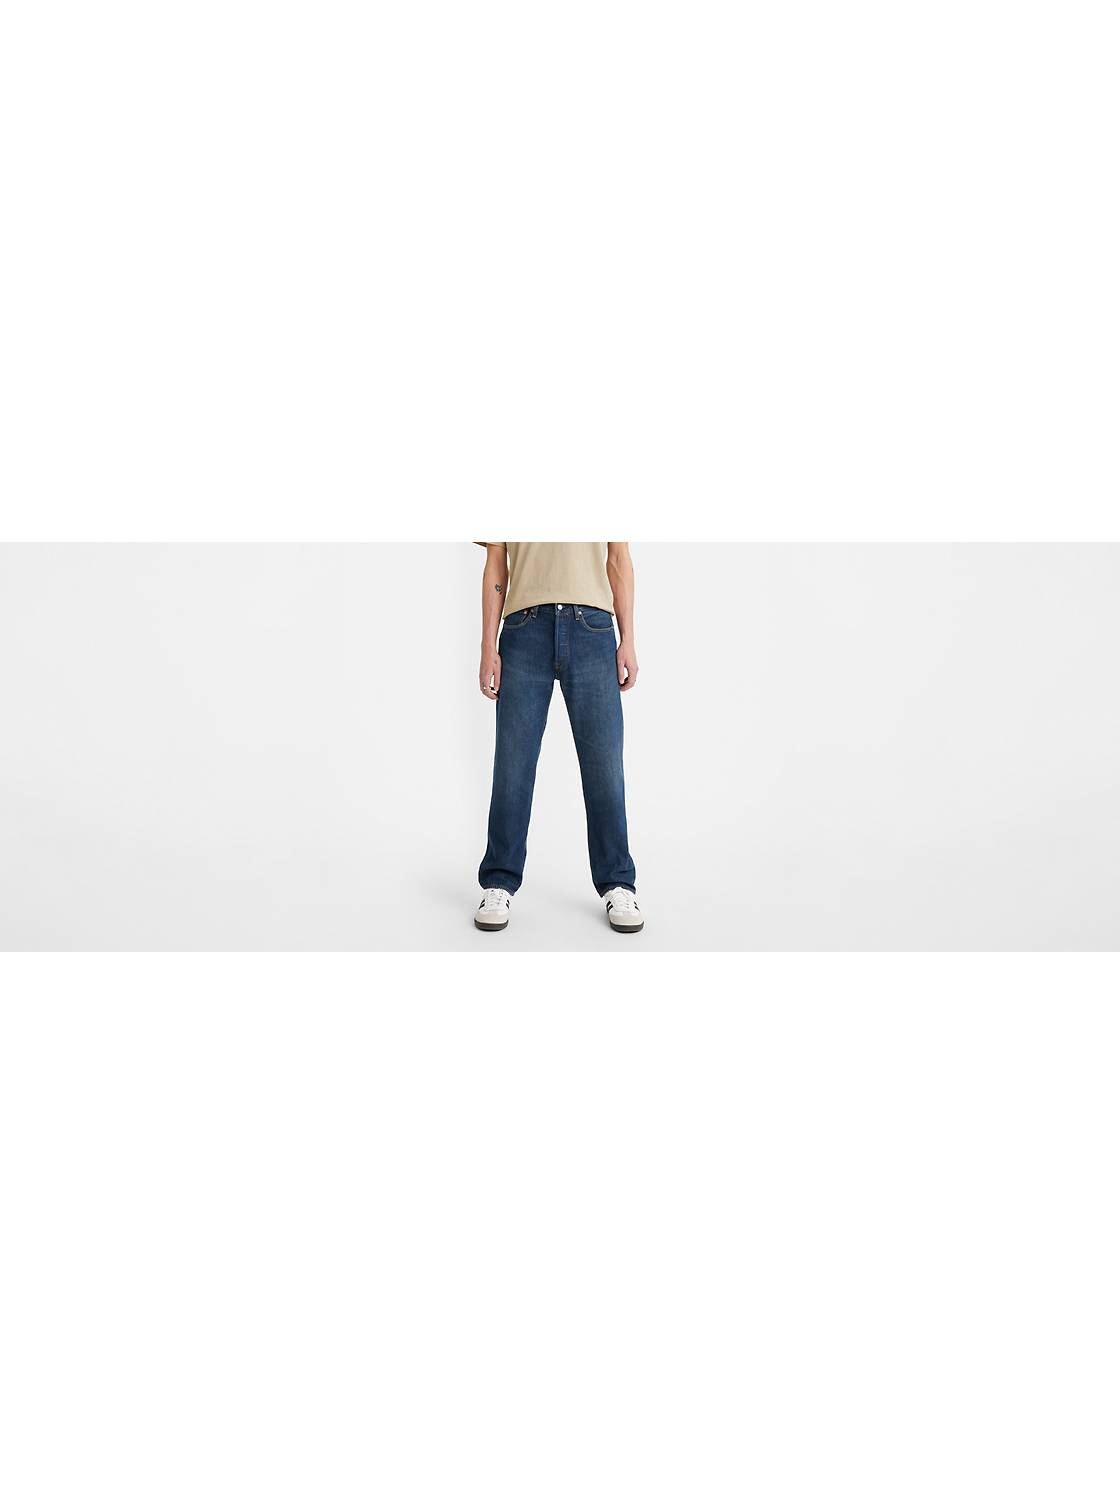 Jeans - LEFTIES España  Fashion, Levi, Levi jeans